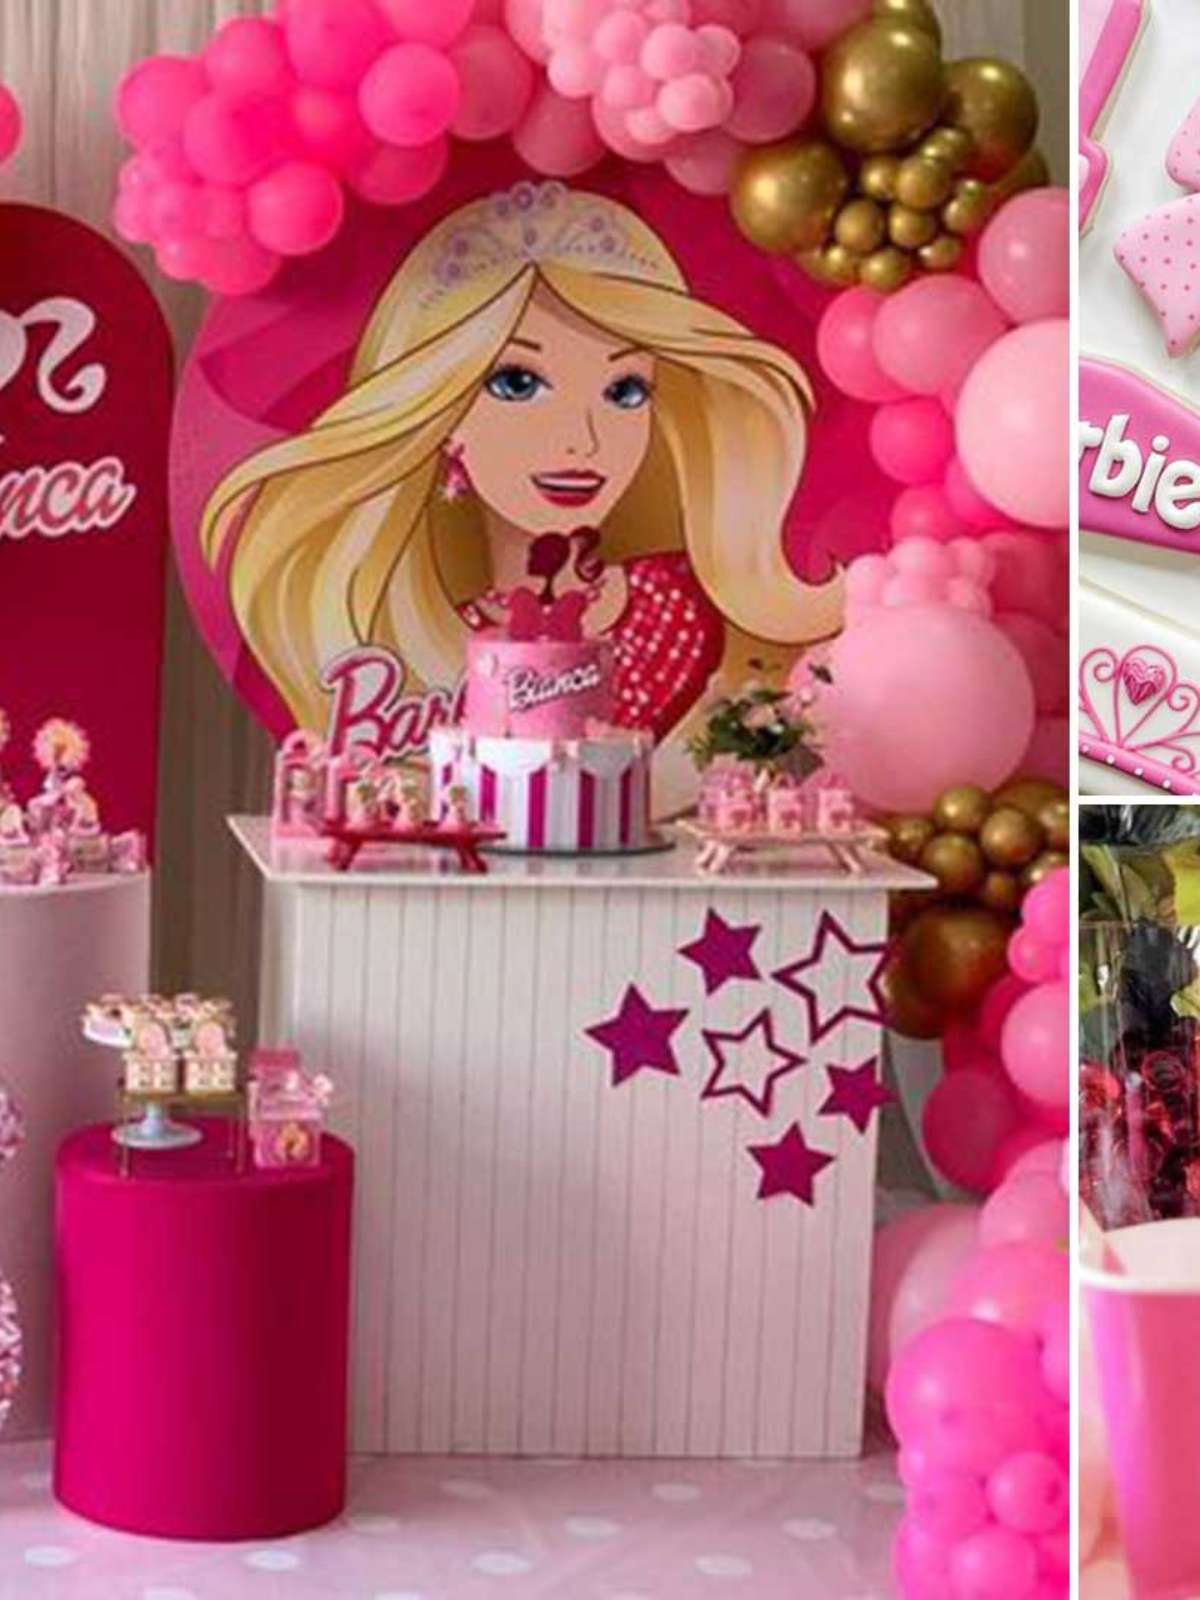 Decoração de aniversário tema Barbie, festa da Barbie  Barbie party  decorations, Barbie theme party, Barbie birthday party